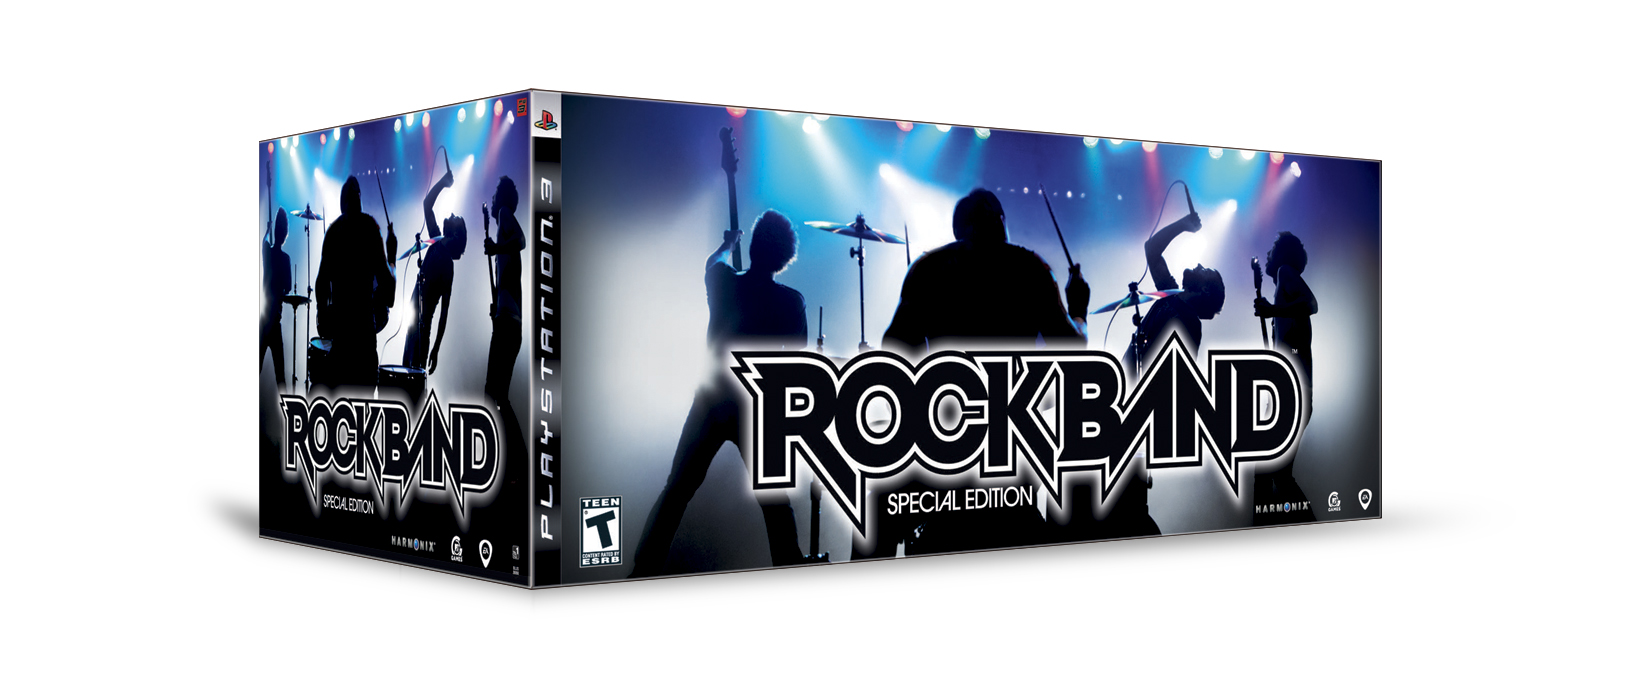 Rock Band edición especial